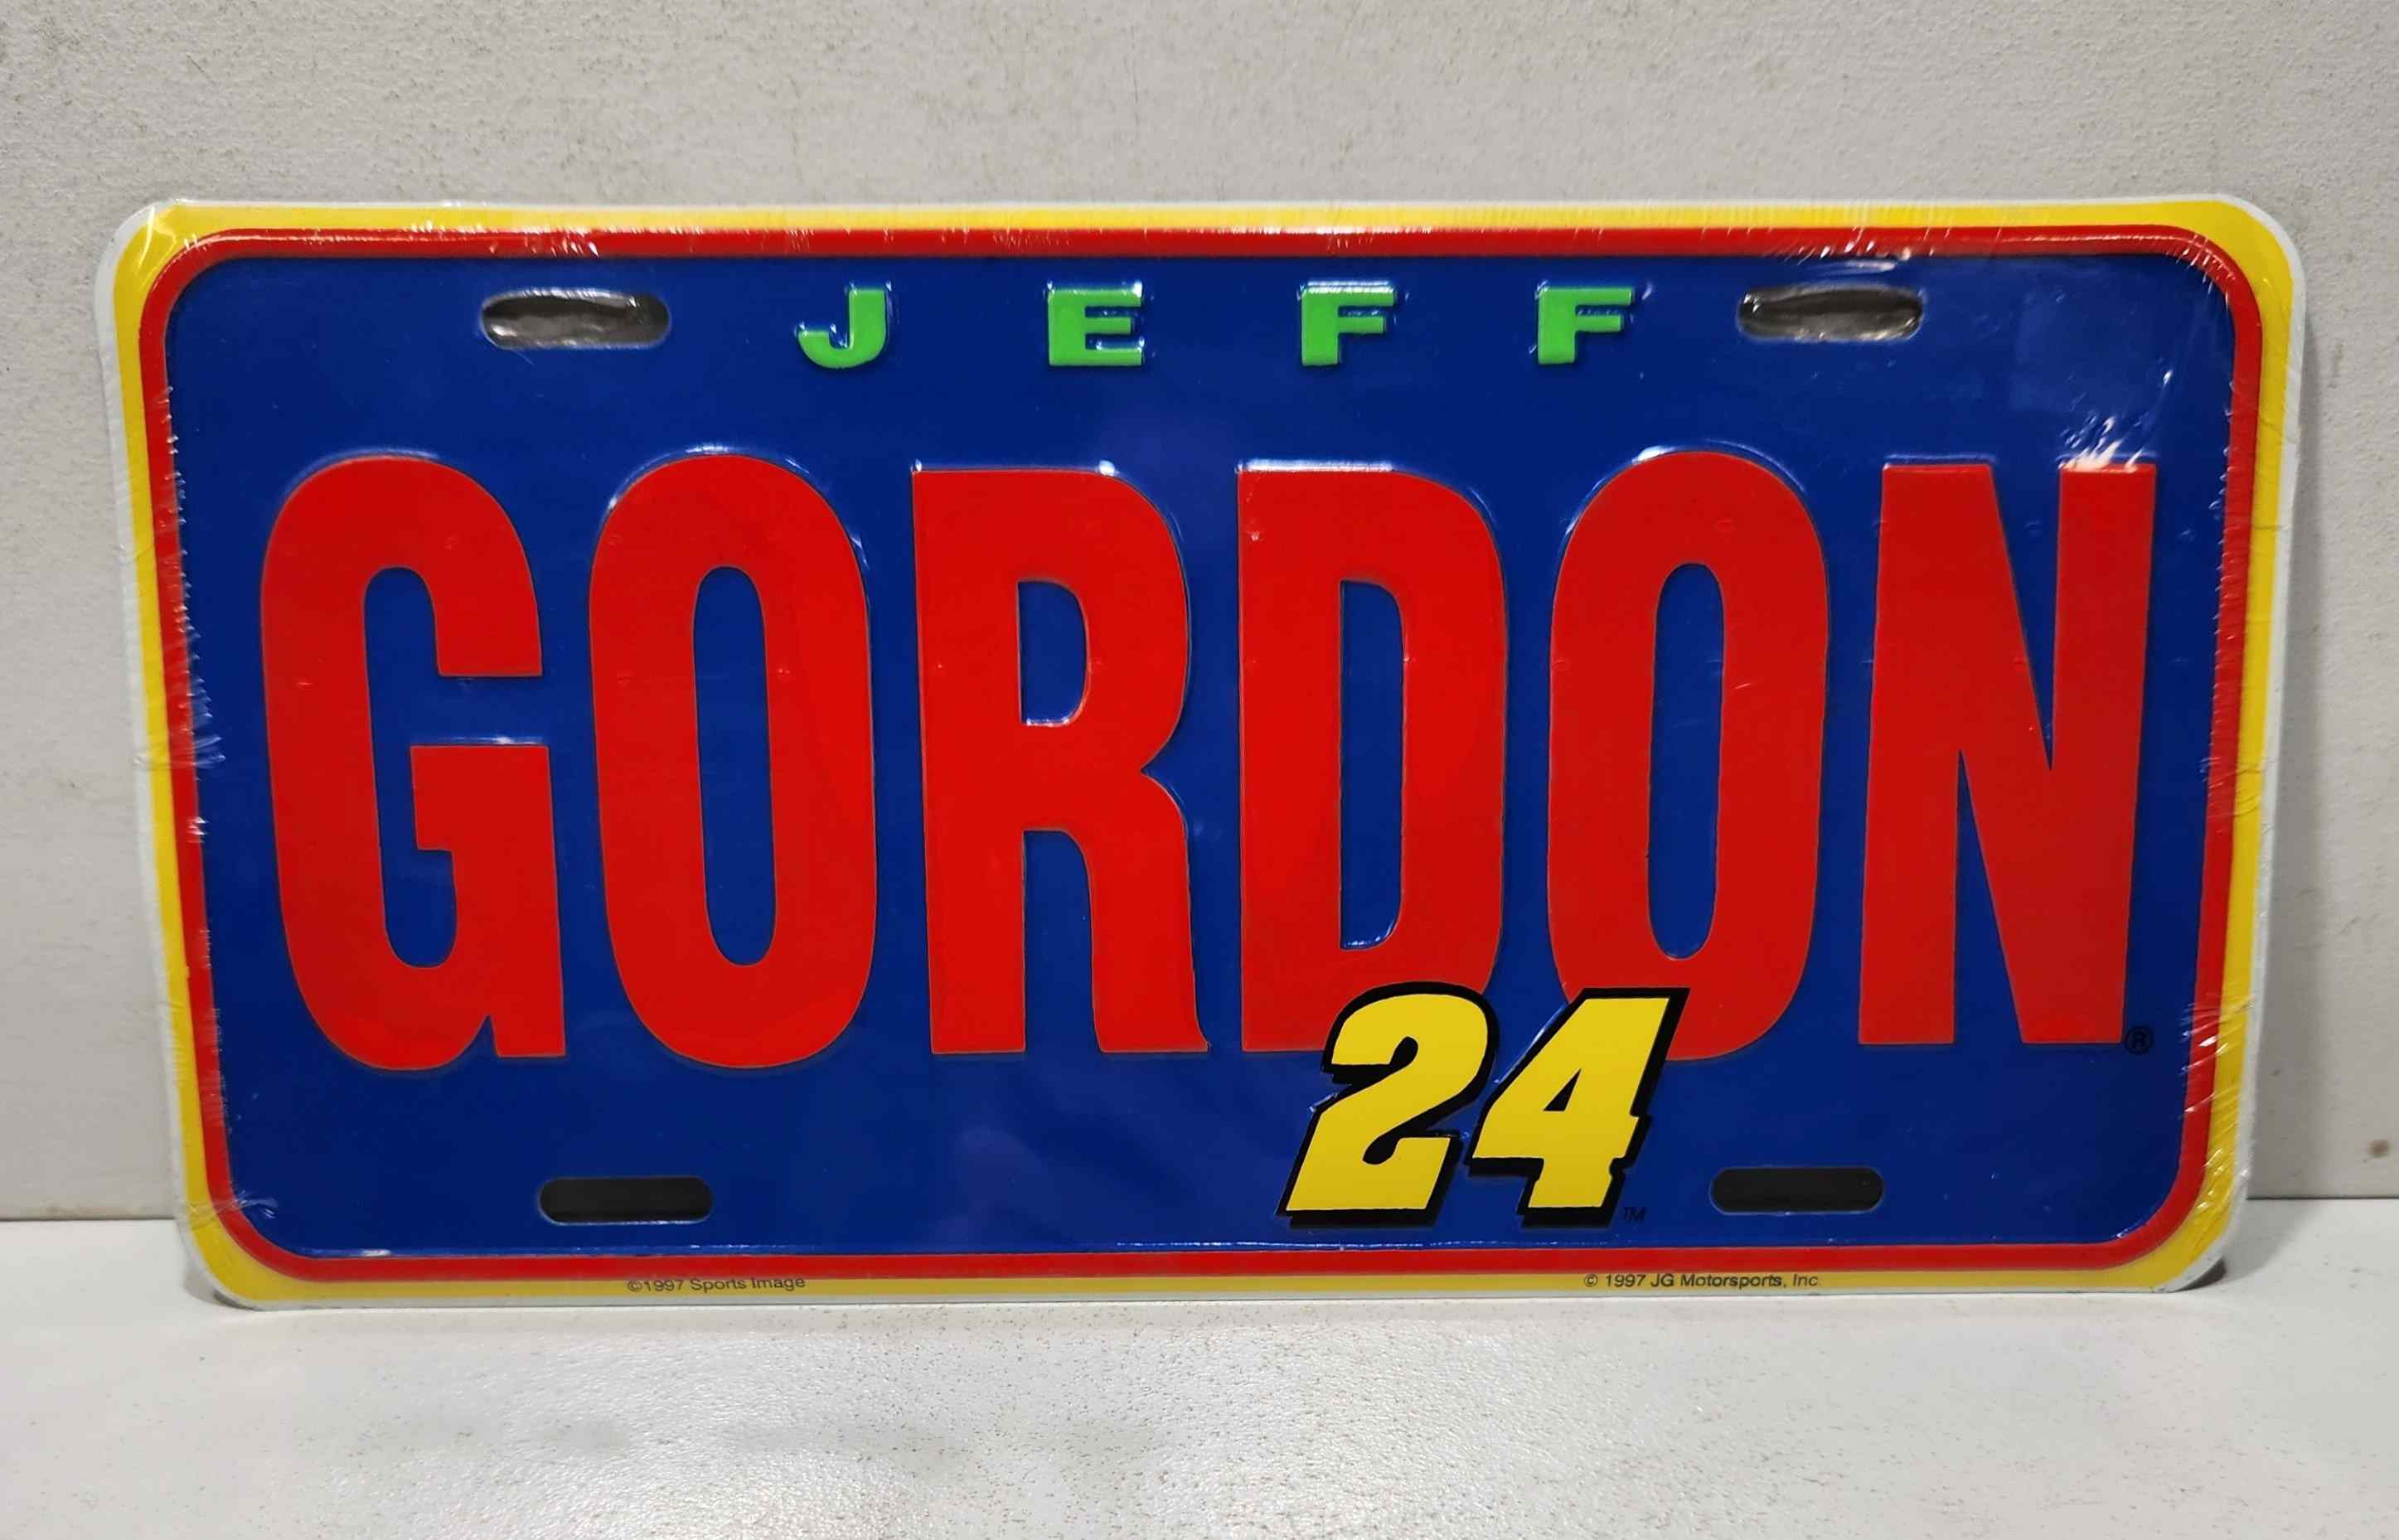 1997 Jeff Gordon "Big Gordon" metal license plate